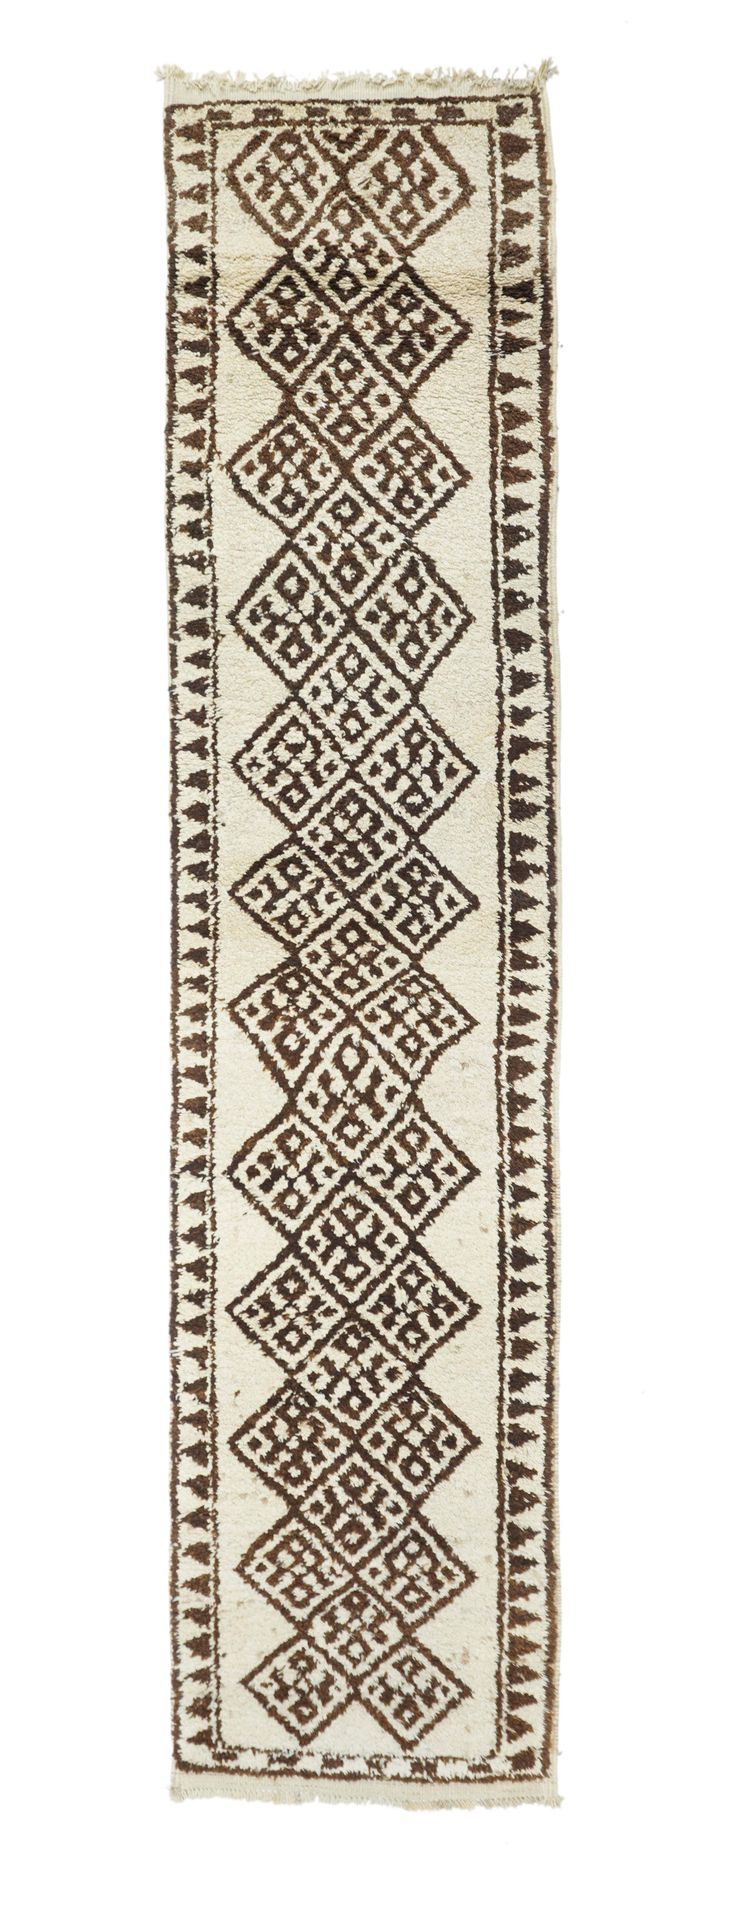 Null 摩洛哥地毯，2'8" x 11'10" ( 0.81 x 3.61 M )